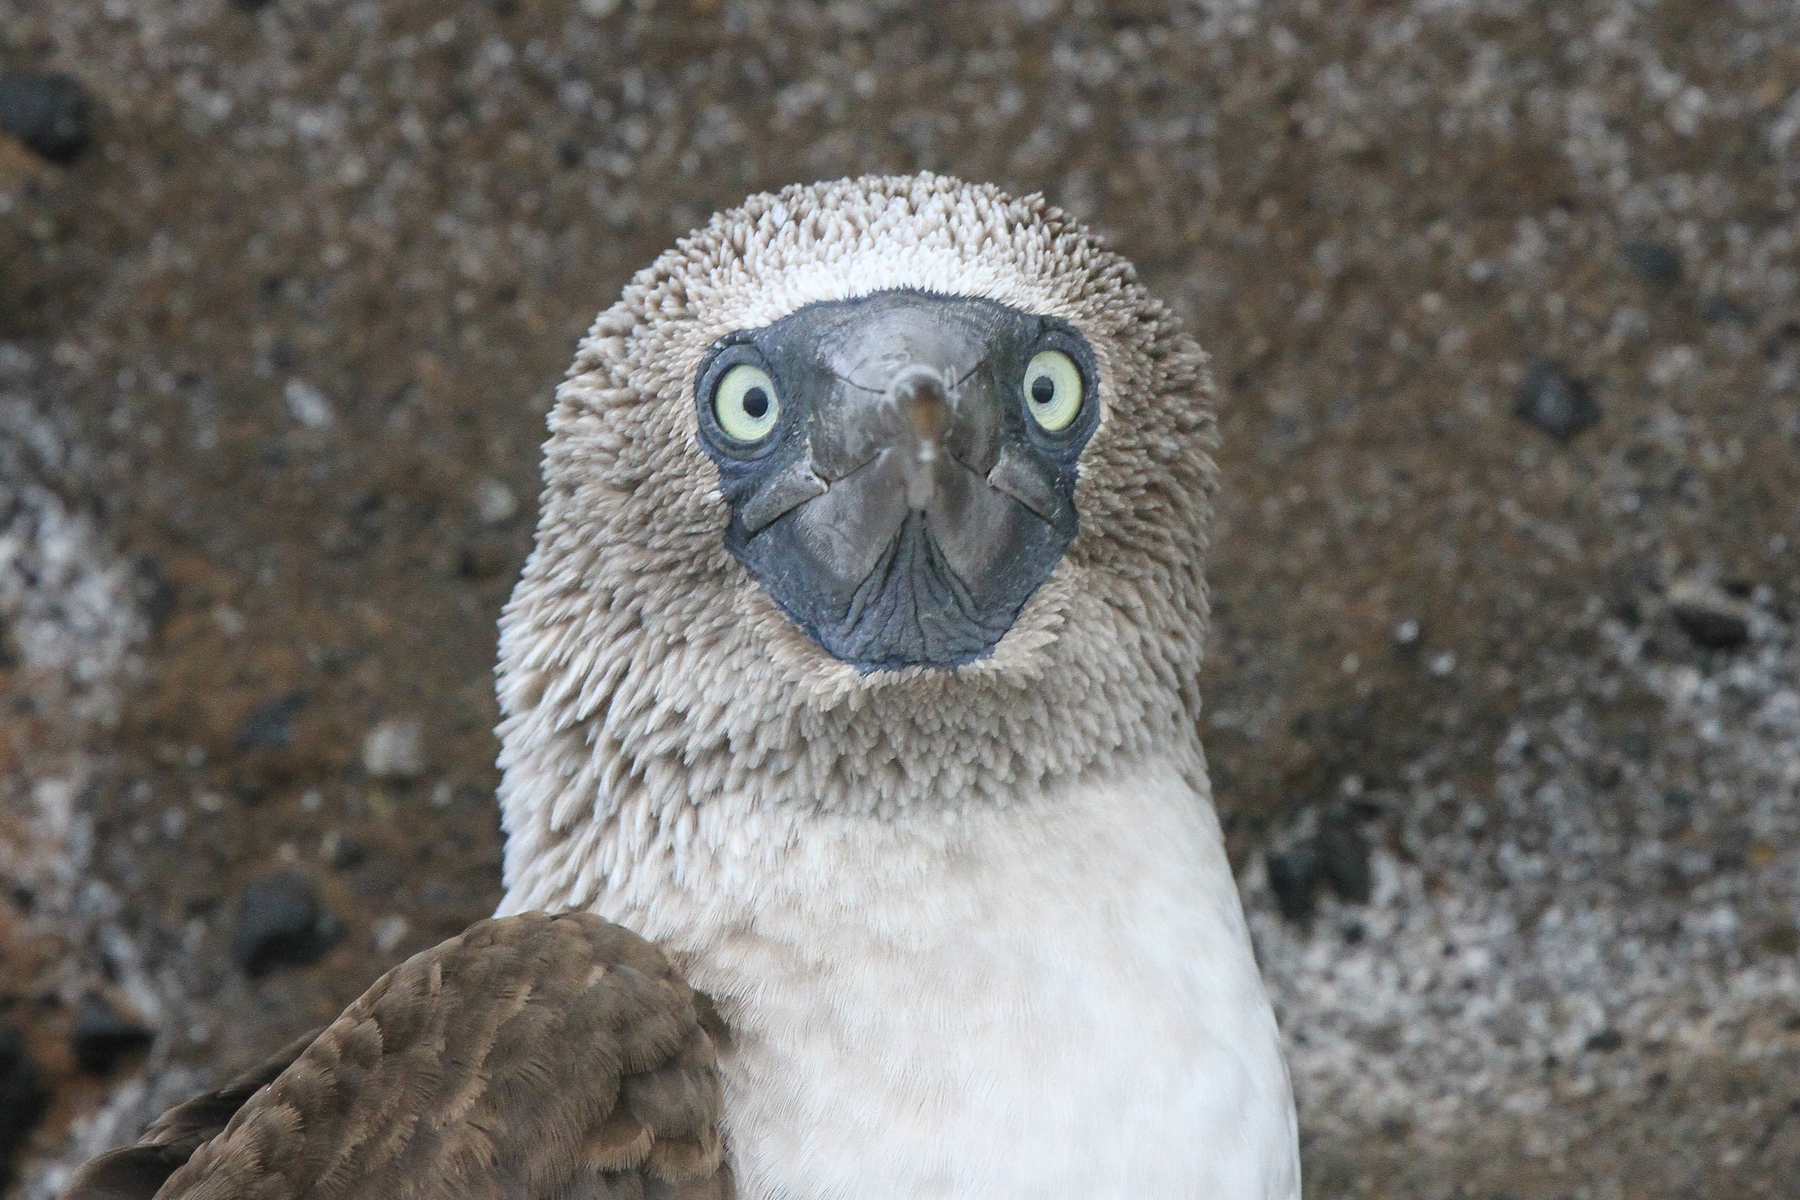 galapagos islands birding tours